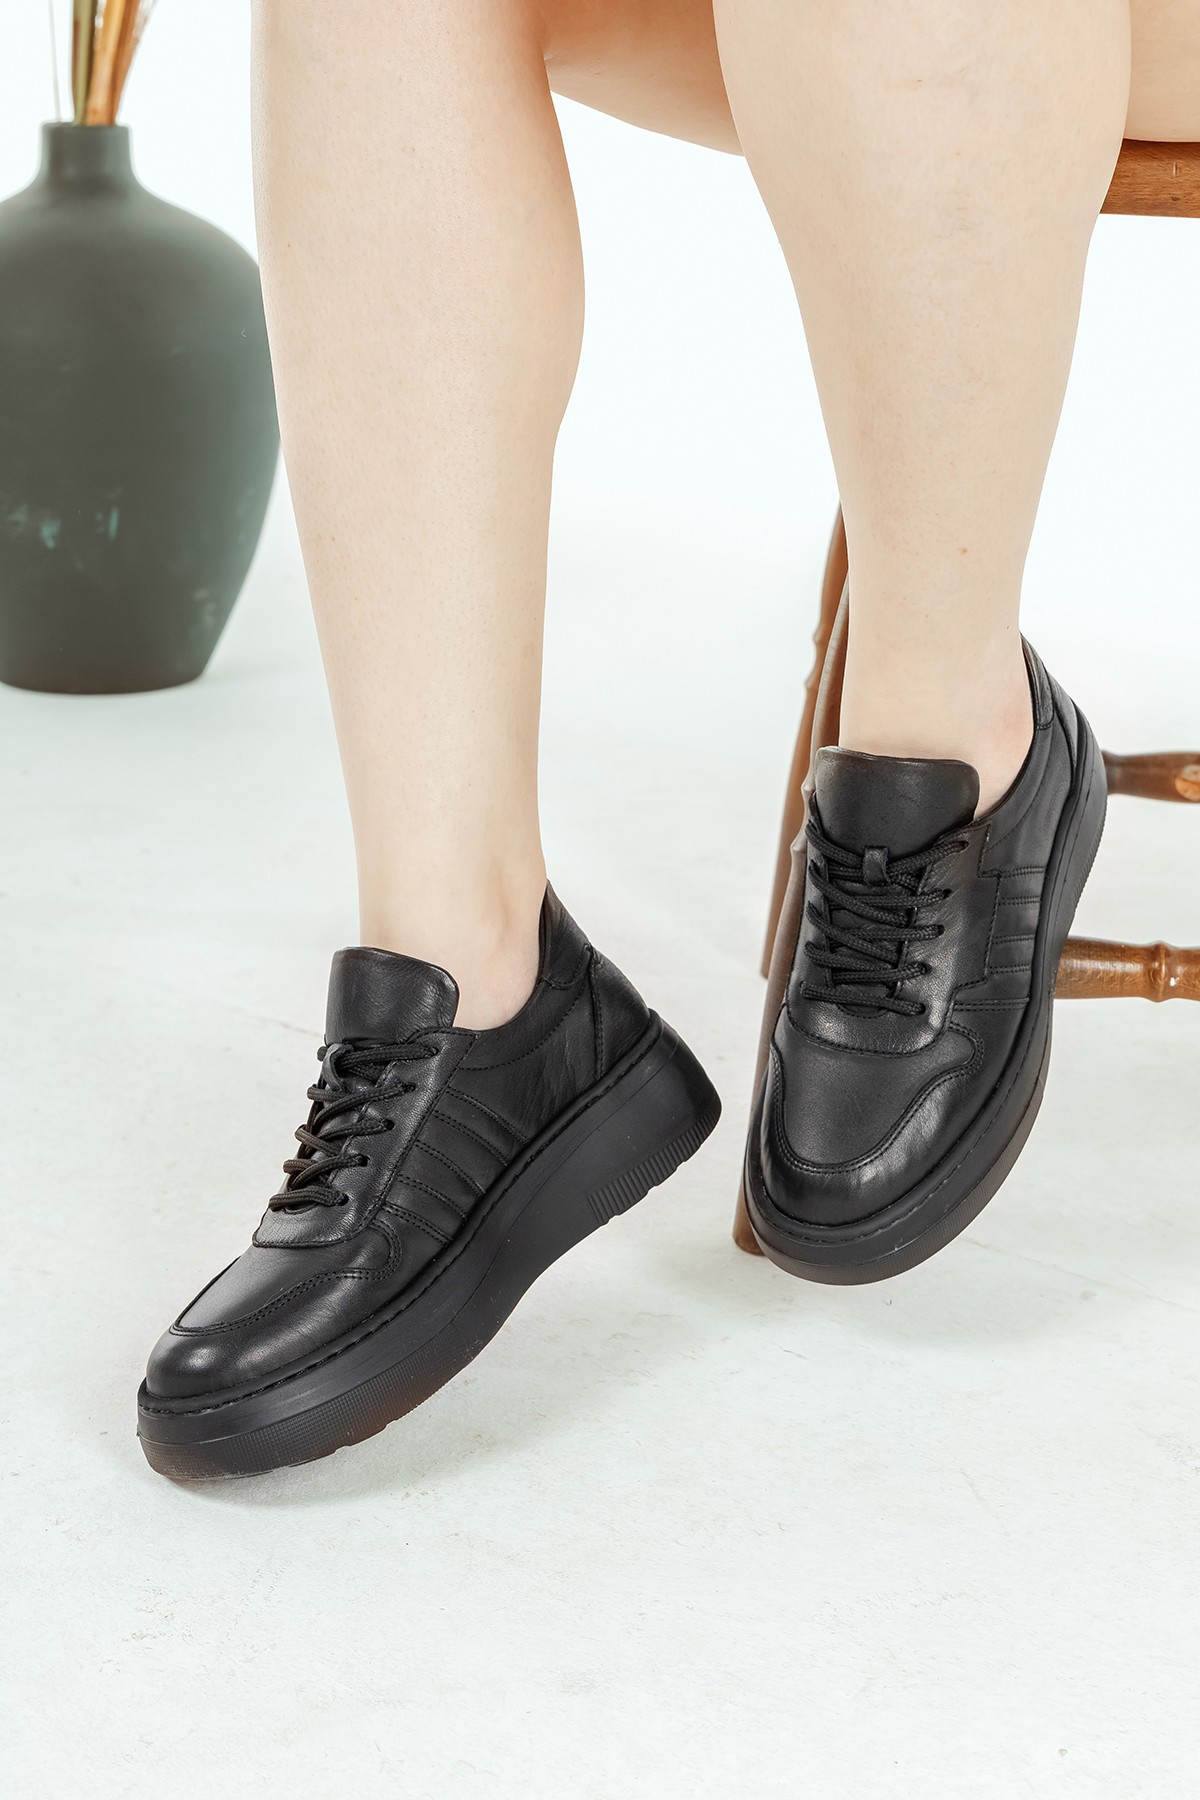 Cooliza Hakiki Deri Sneaker Yüksek Taban Rahat Günlük Kadın Spor Ayakkabı - Siyah